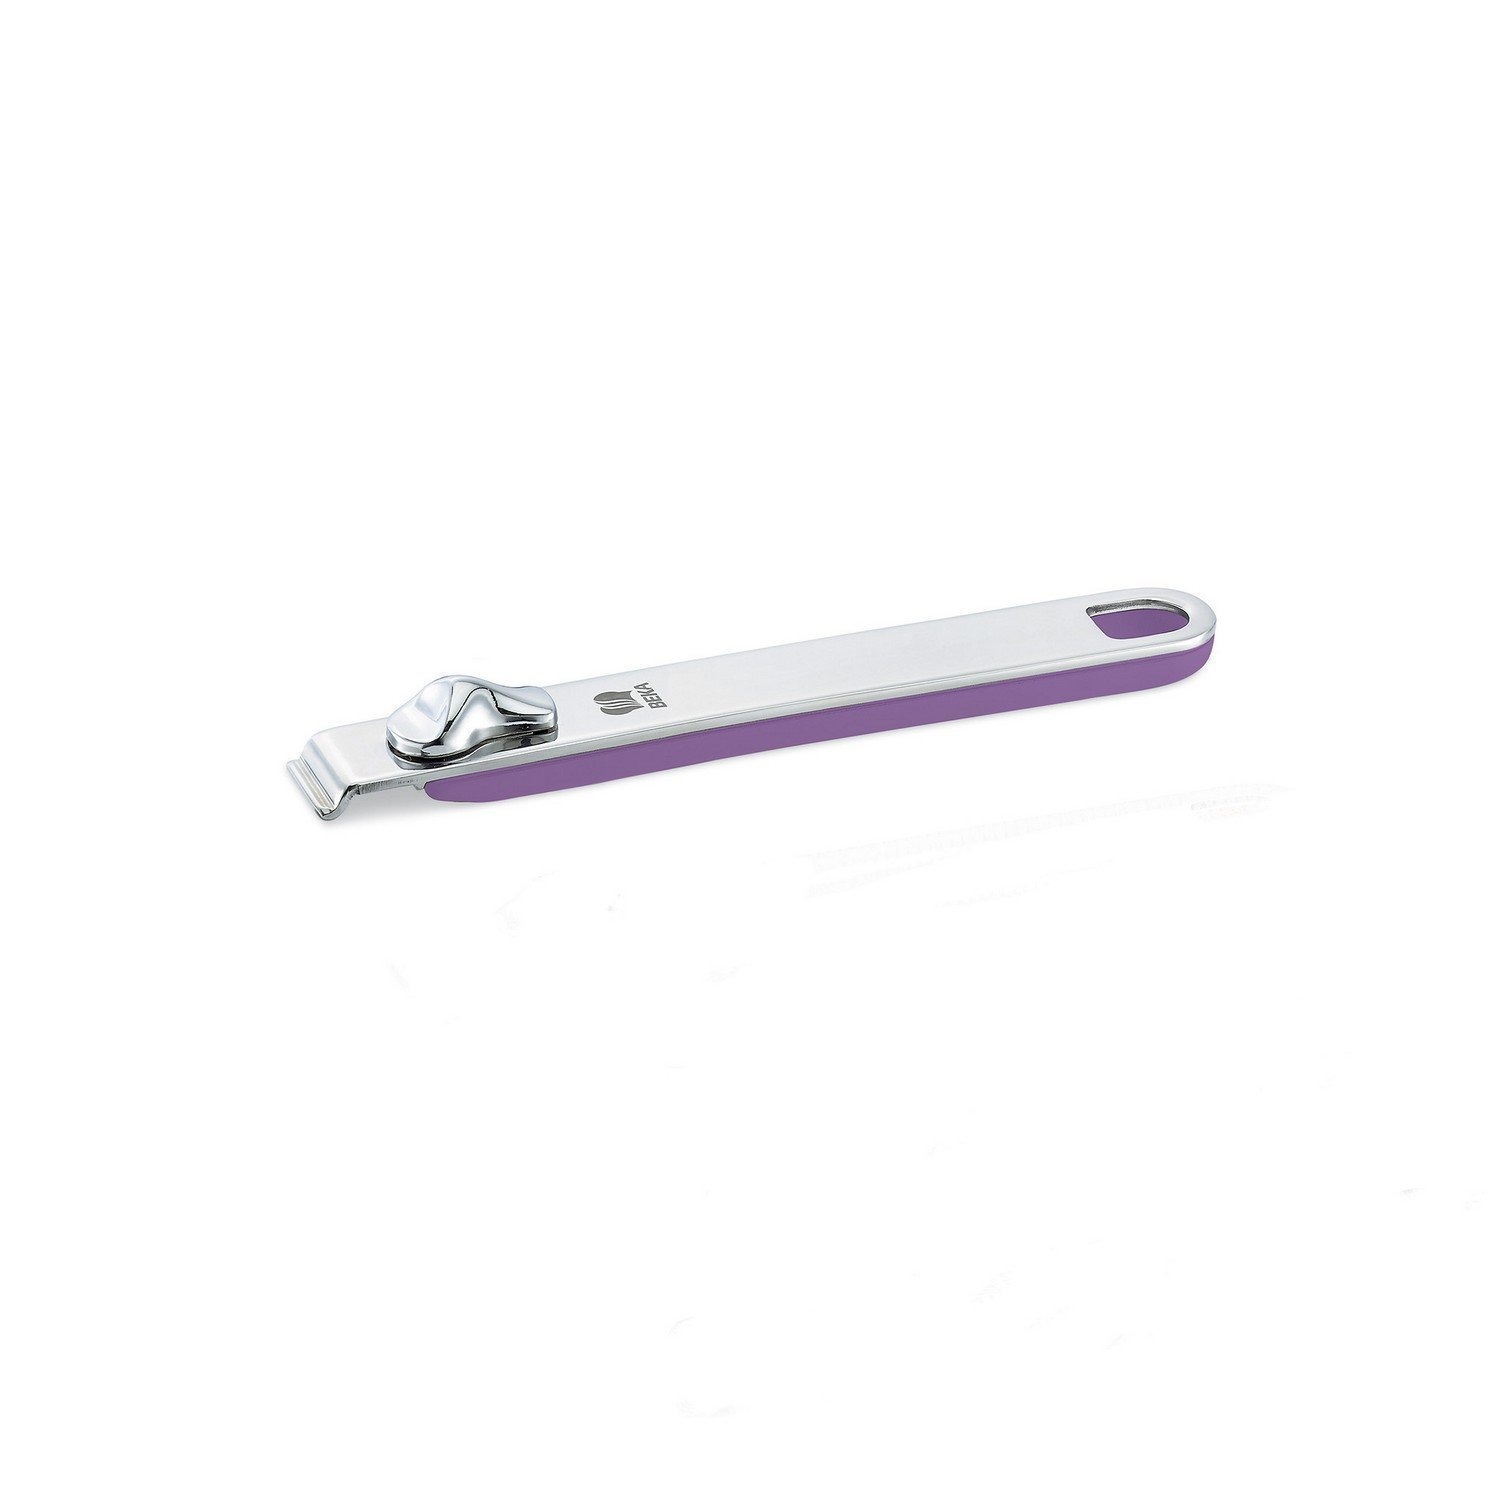 Ручка съемная длинная Beka select фиолетовая 18,5 см ручка кольцо домарт